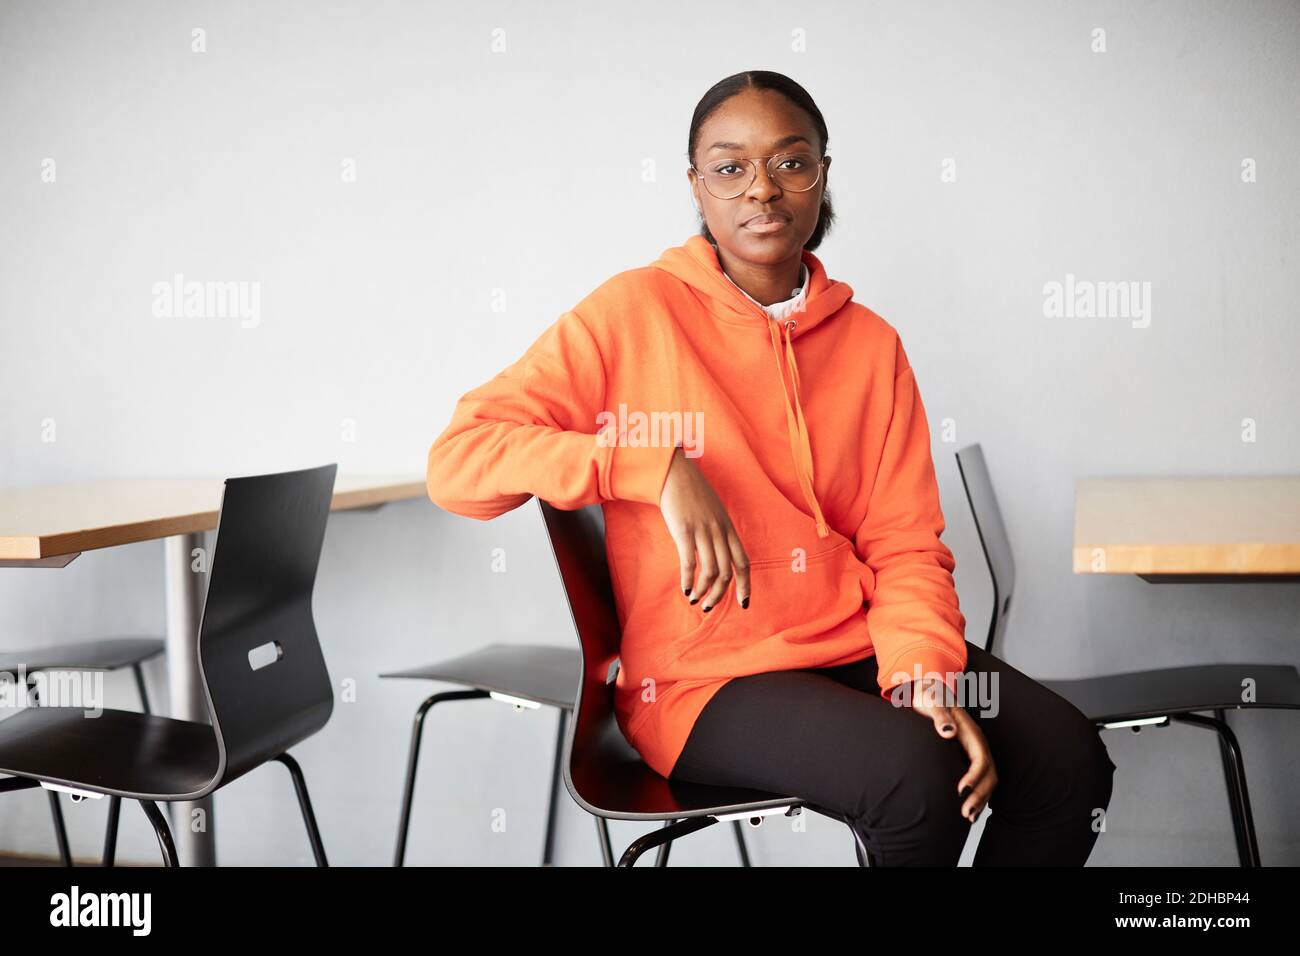 Portrait eines jungen Studenten auf dem Stuhl gegen die Wand sitzen universität Stockfoto